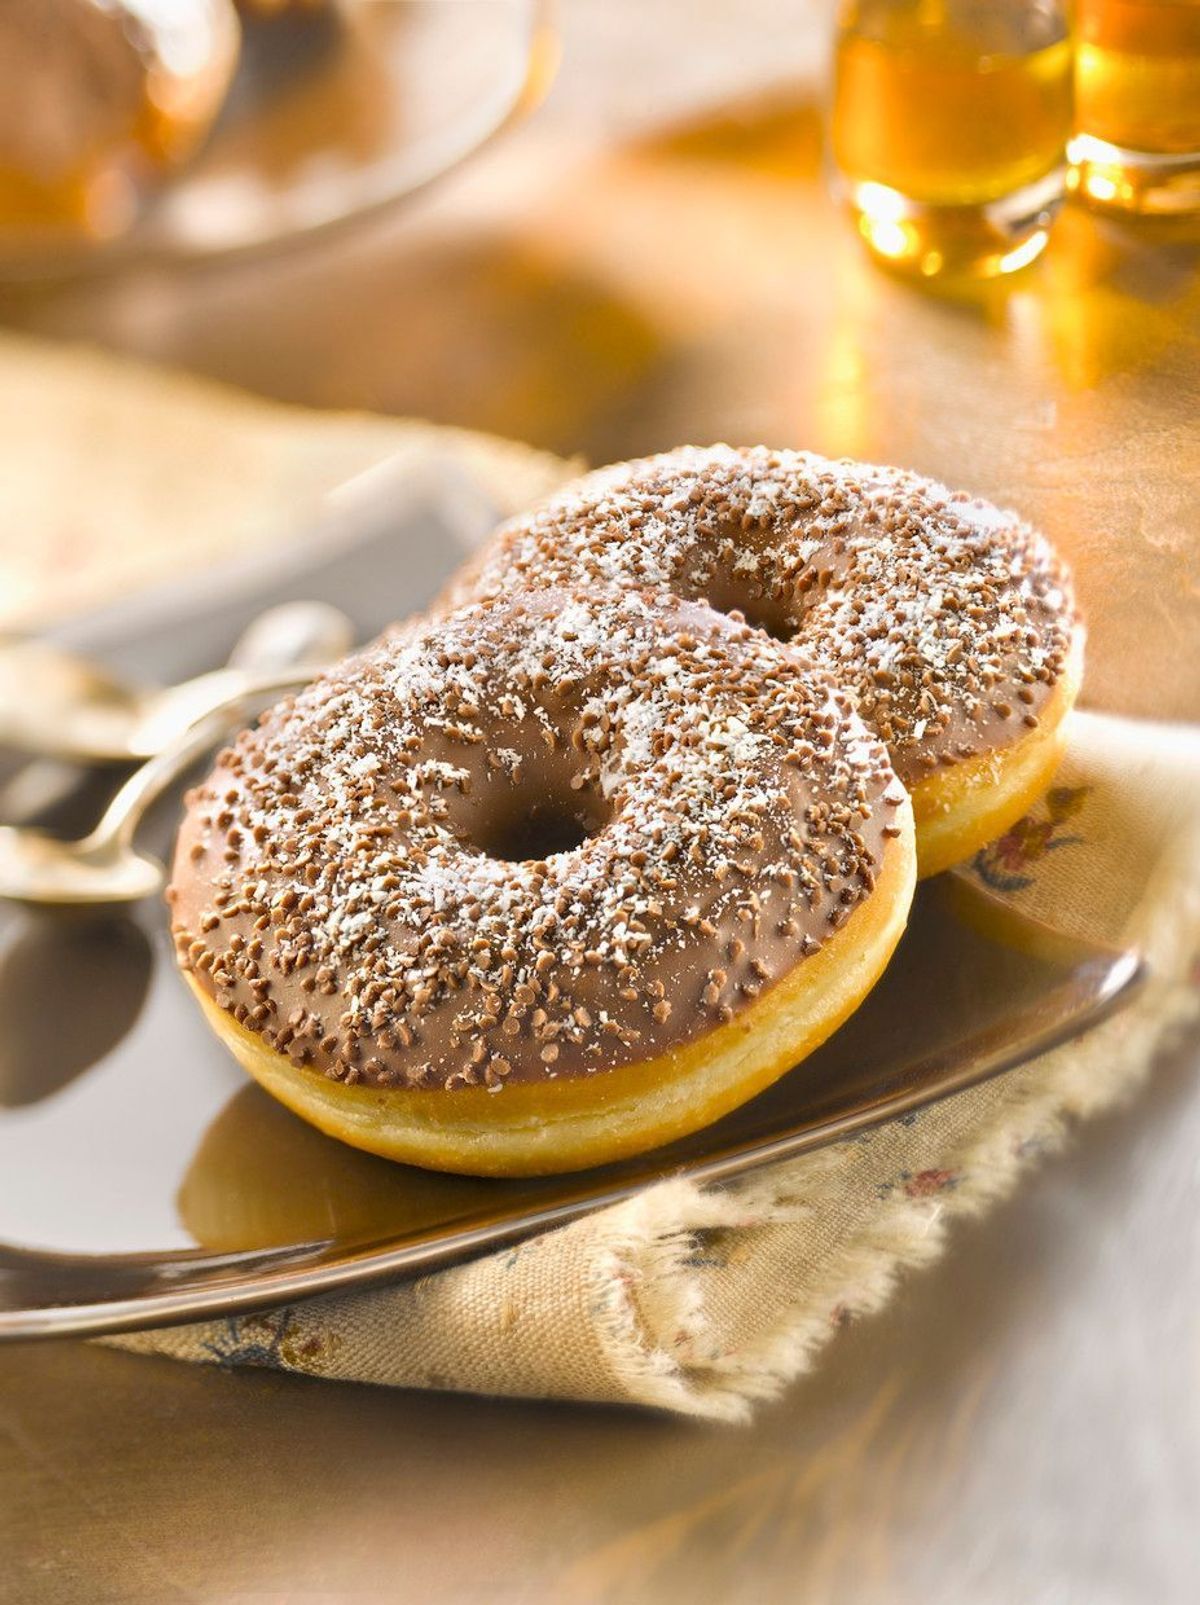 Enie backt: Rezept-Bild Donuts mit Schokolade und Haselnüssen		